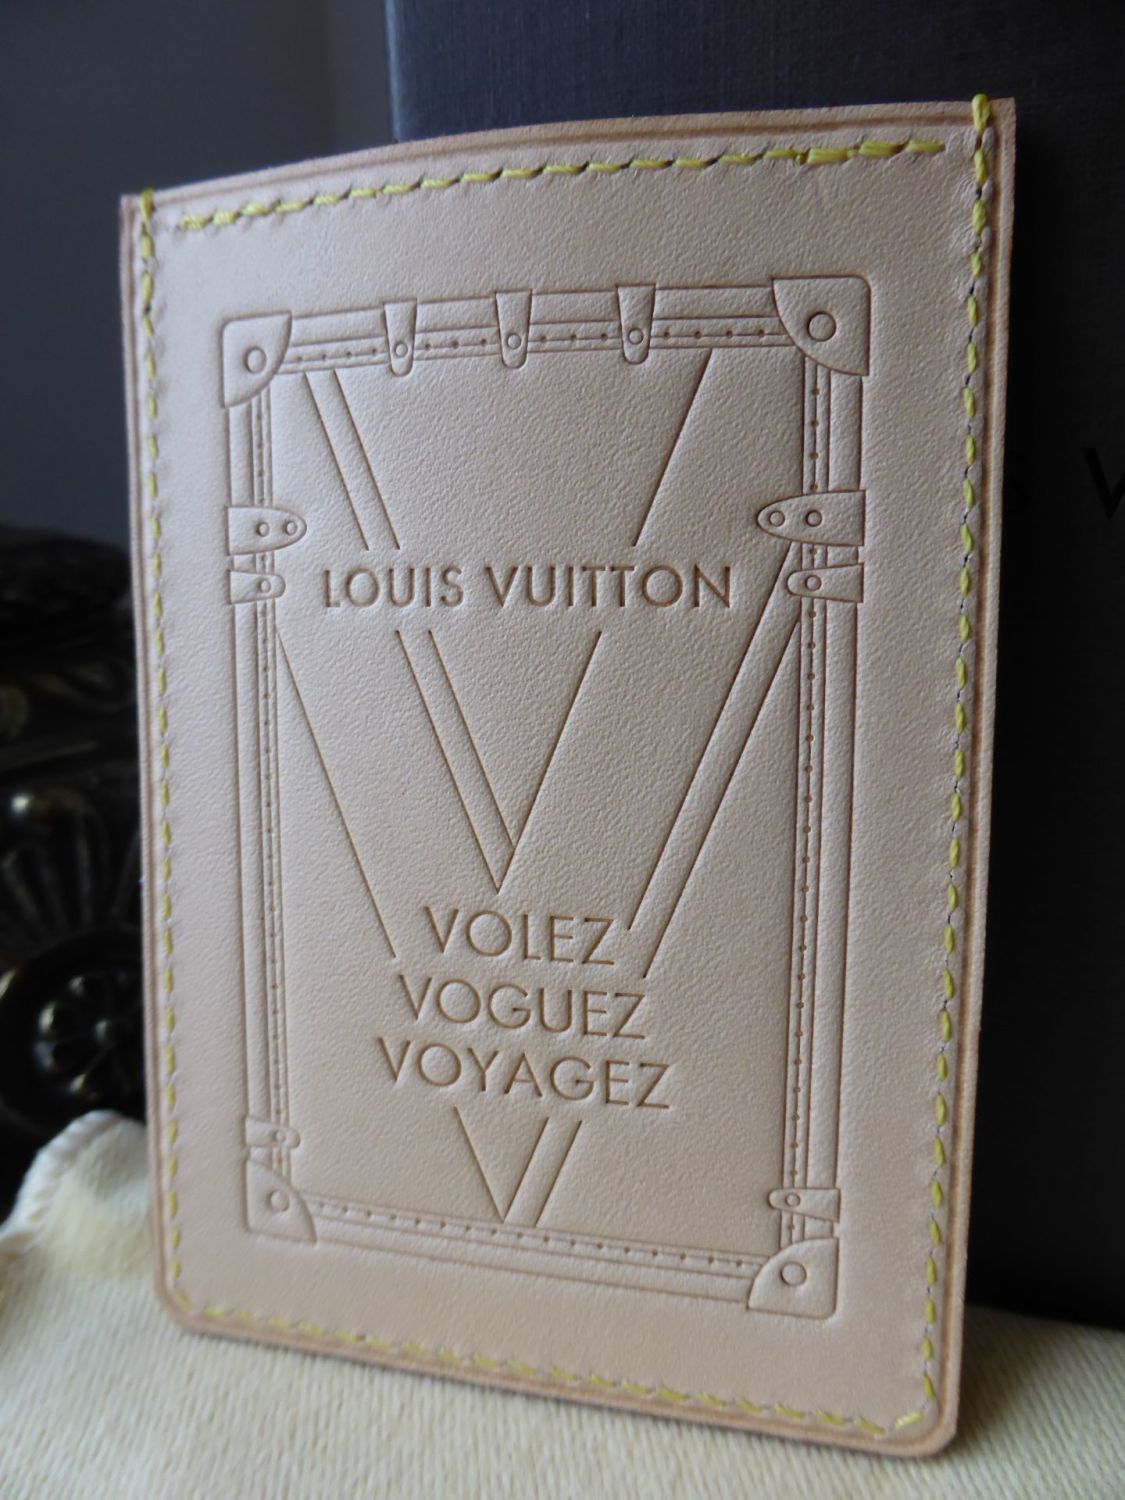 LOUIS VUITTON Vachetta V Volez Vougues Voyages Des Valises Card Hold Wallet  NEW